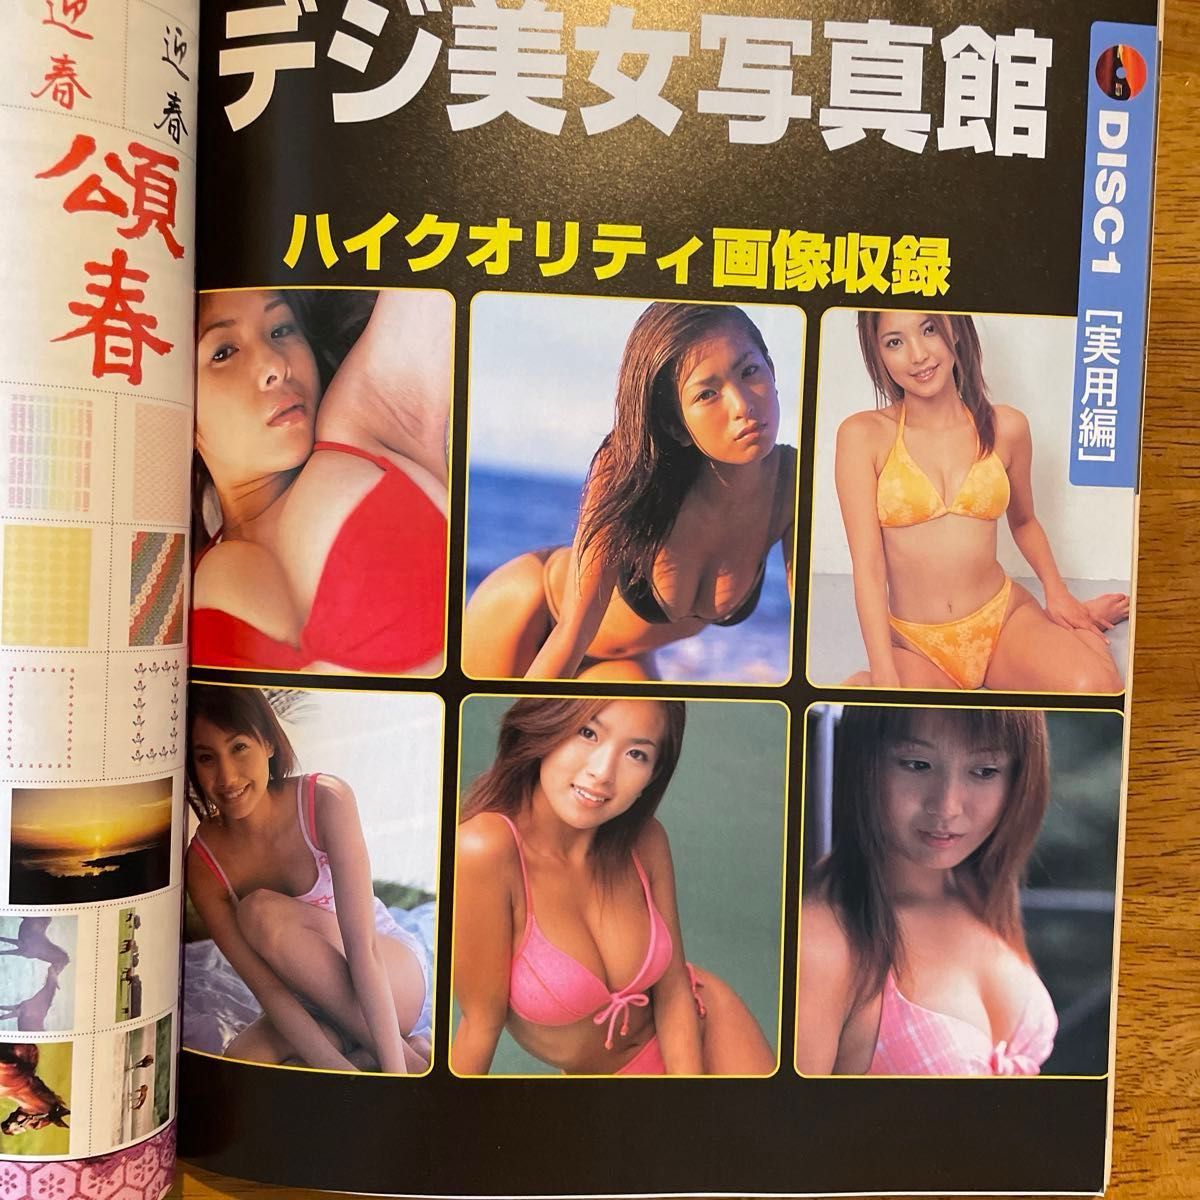 雑誌「デジユーザー」未開封CD-ROM2枚付き、2002年発行、吉岡美穂表紙